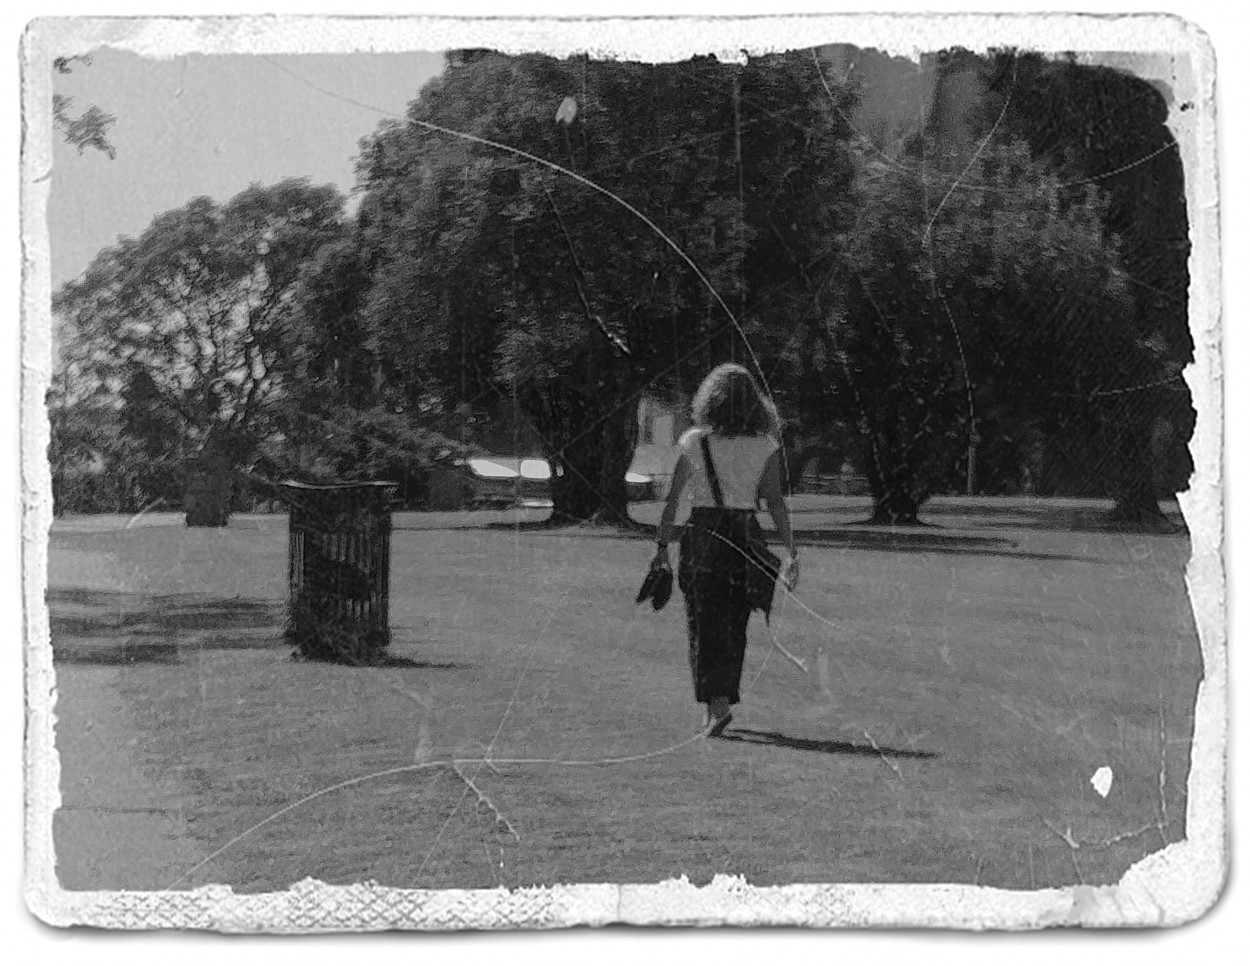 "Descalza en el parque" de Nora Lilian Iturbide ( Noral )